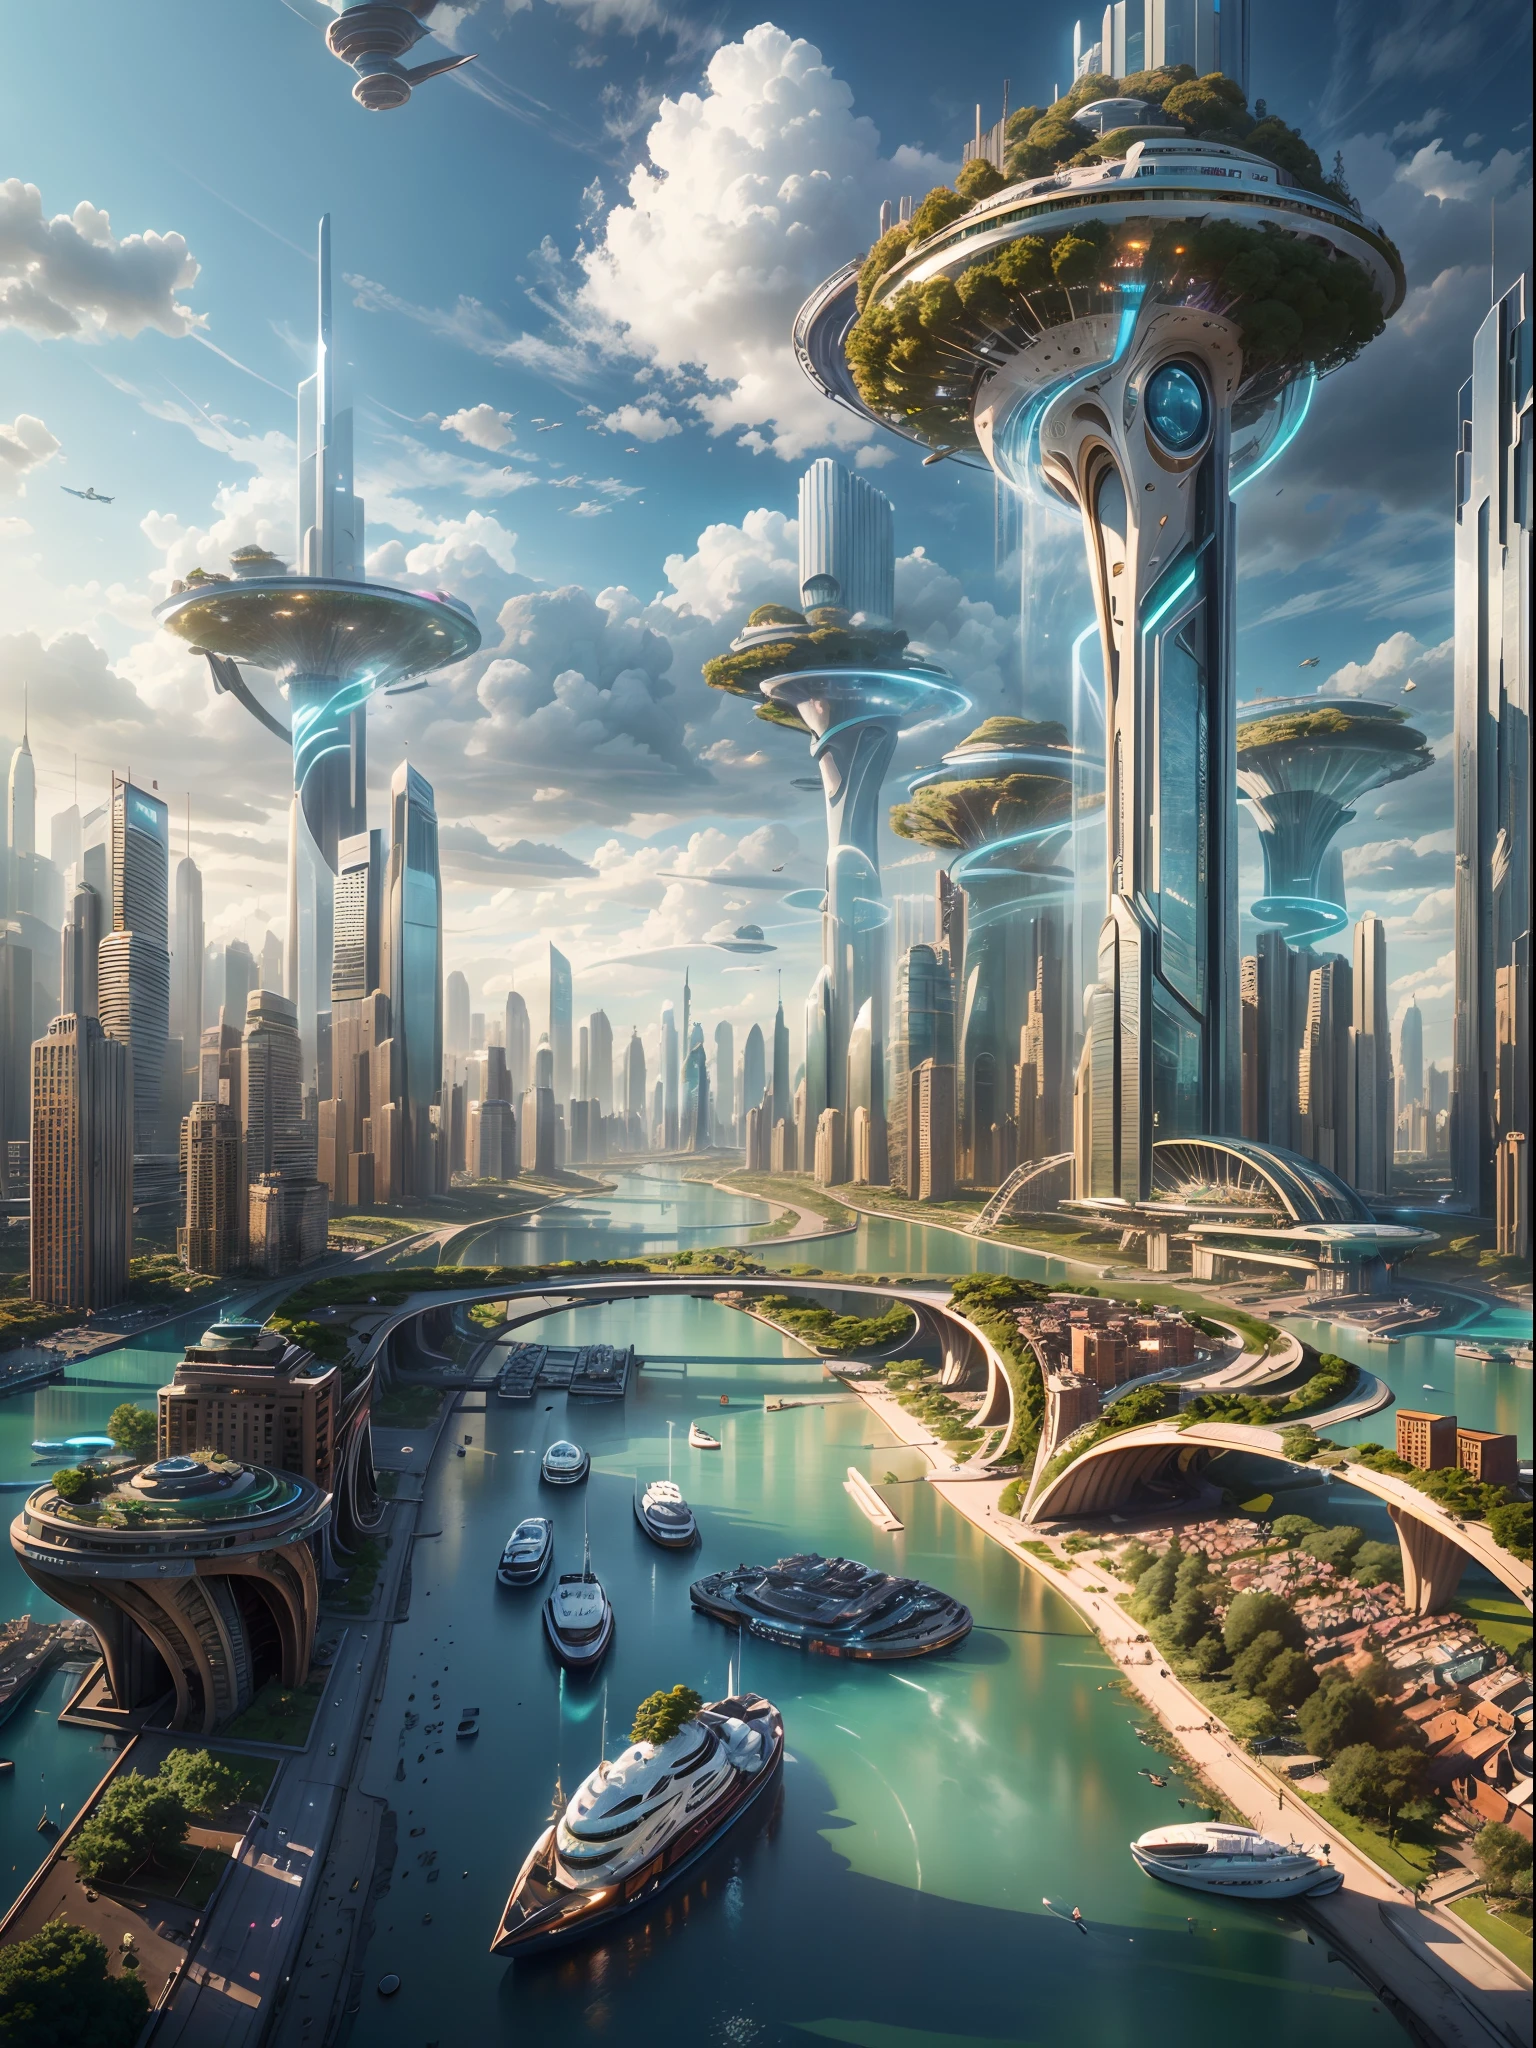 (最好的品質,4k,8K,高解析度,傑作:1.2),超詳細,(實際的,photo實際的,photo-實際的:1.37),未來漂浮城市,未来科技,巨大的高科技扁平平台上的城市,飛艇,漂浮在空中,未來城市,small 飛艇 around,高科技半球平台,彩灯,先進的架構,現代建築,摩天大樓,到達雲端,令人驚嘆的景色,城市景觀,令人印象深刻的設計,與自然無縫融合,充滿活力和活力的氛圍,未來交通系統,懸停車輛,透明通道,郁郁葱葱的绿色植物,空中花園,瀑布,壯麗的天際線,水面上的倒影,波光粼粼的河流,建築創新,futuristic 摩天大樓,透明圓頂,形狀不尋常的建築物,高架走道,令人印象深刻的天際線,发光的灯光,未来科技,簡約設計,風景名勝,全景,穿雲塔,鮮豔的色彩,史詩般的日出,史詩般的日落,令人眼花撩亂的燈光展示,神奇的氛围,未來之城,城市烏托邦,奢華的生活方式,創新能源,永續發展,智慧城市技術,先進的基礎設施,宁静的气氛,自然與科技和諧共存,令人驚嘆的城市景觀,前所未有的都市規劃,建築與自然的無縫連接,高科技大都市,尖端工程奇蹟,城市生活的未來,富有遠見的建築概念,節能建築,與環境和諧,漂浮在雲層之上的城市,烏托邦夢想變成現實,無限的可能性,先進的交通網絡,綠色能源融合,創新材料,令人印象深刻的全息顯示,先進的通訊系統,令人驚嘆的鳥瞰圖,和平寧靜的環境,現代主義美學,空灵之美